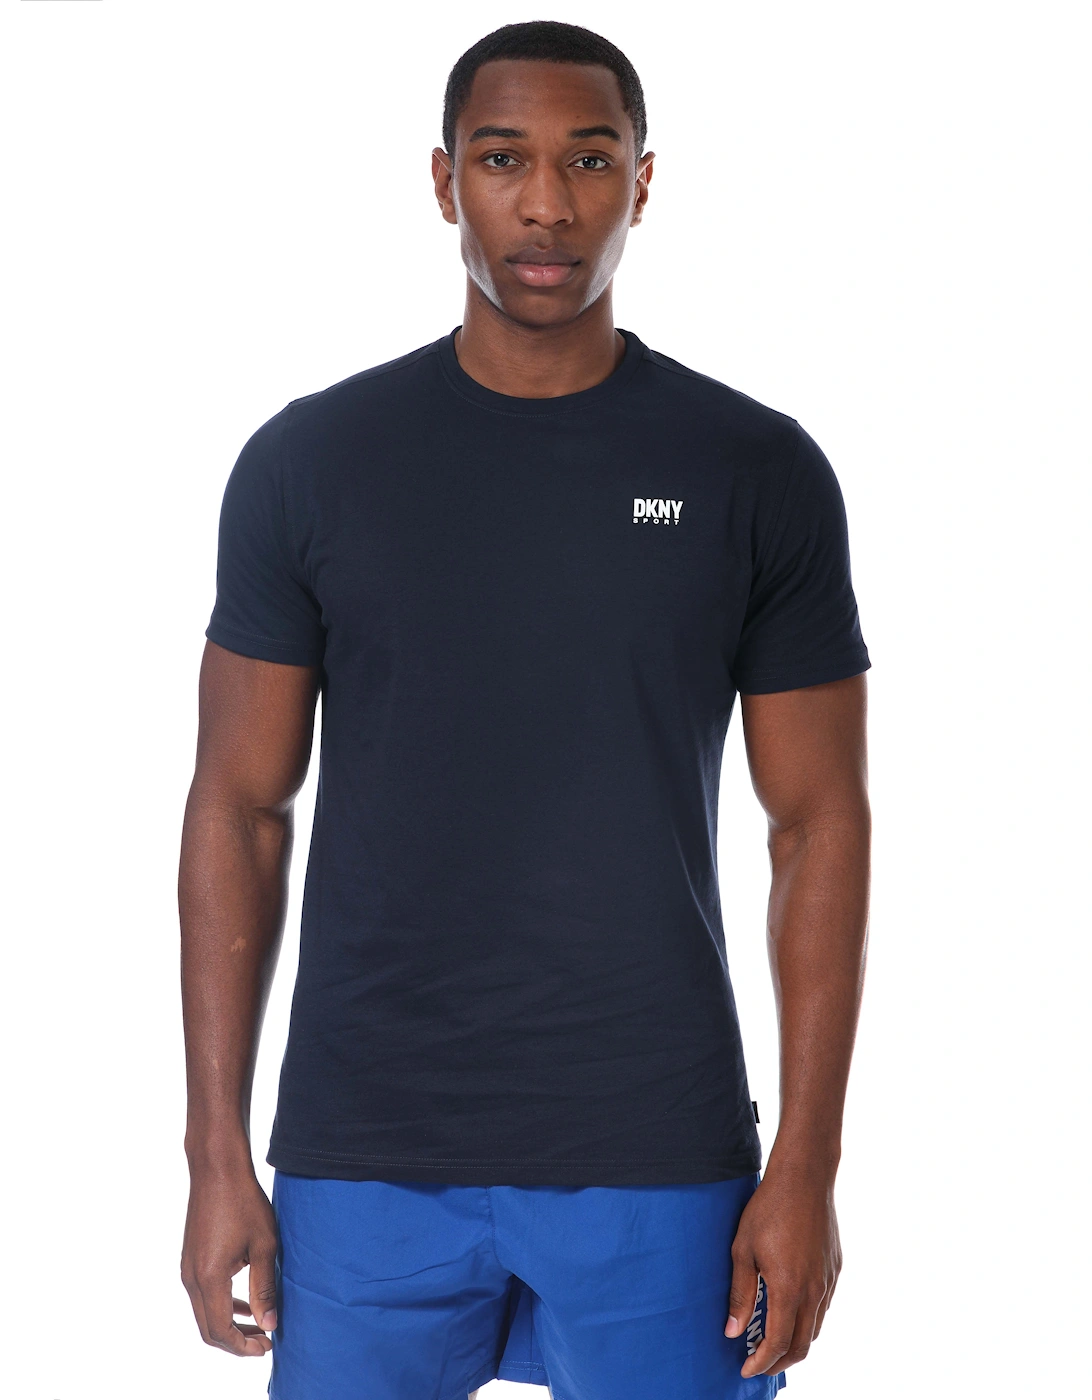 Men's Mens New York T-Shirt - Blue/Dark (Shade)/Navy